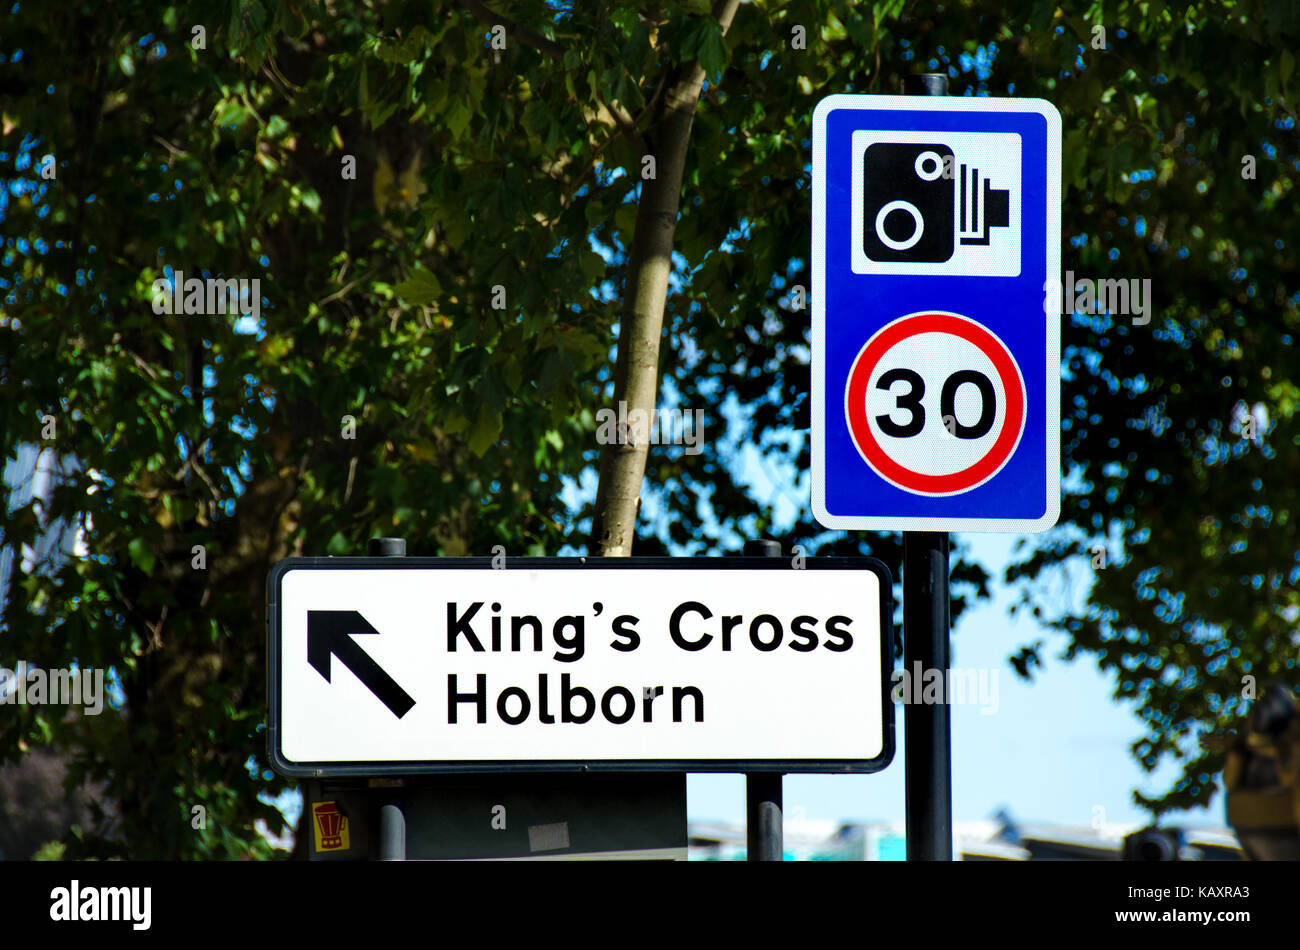 Londres, Inglaterra, Reino Unido. firmar en el terraplén de kings cross y holborn, límite de velocidad de 30 mph y la advertencia de cámaras de velocidad Foto de stock